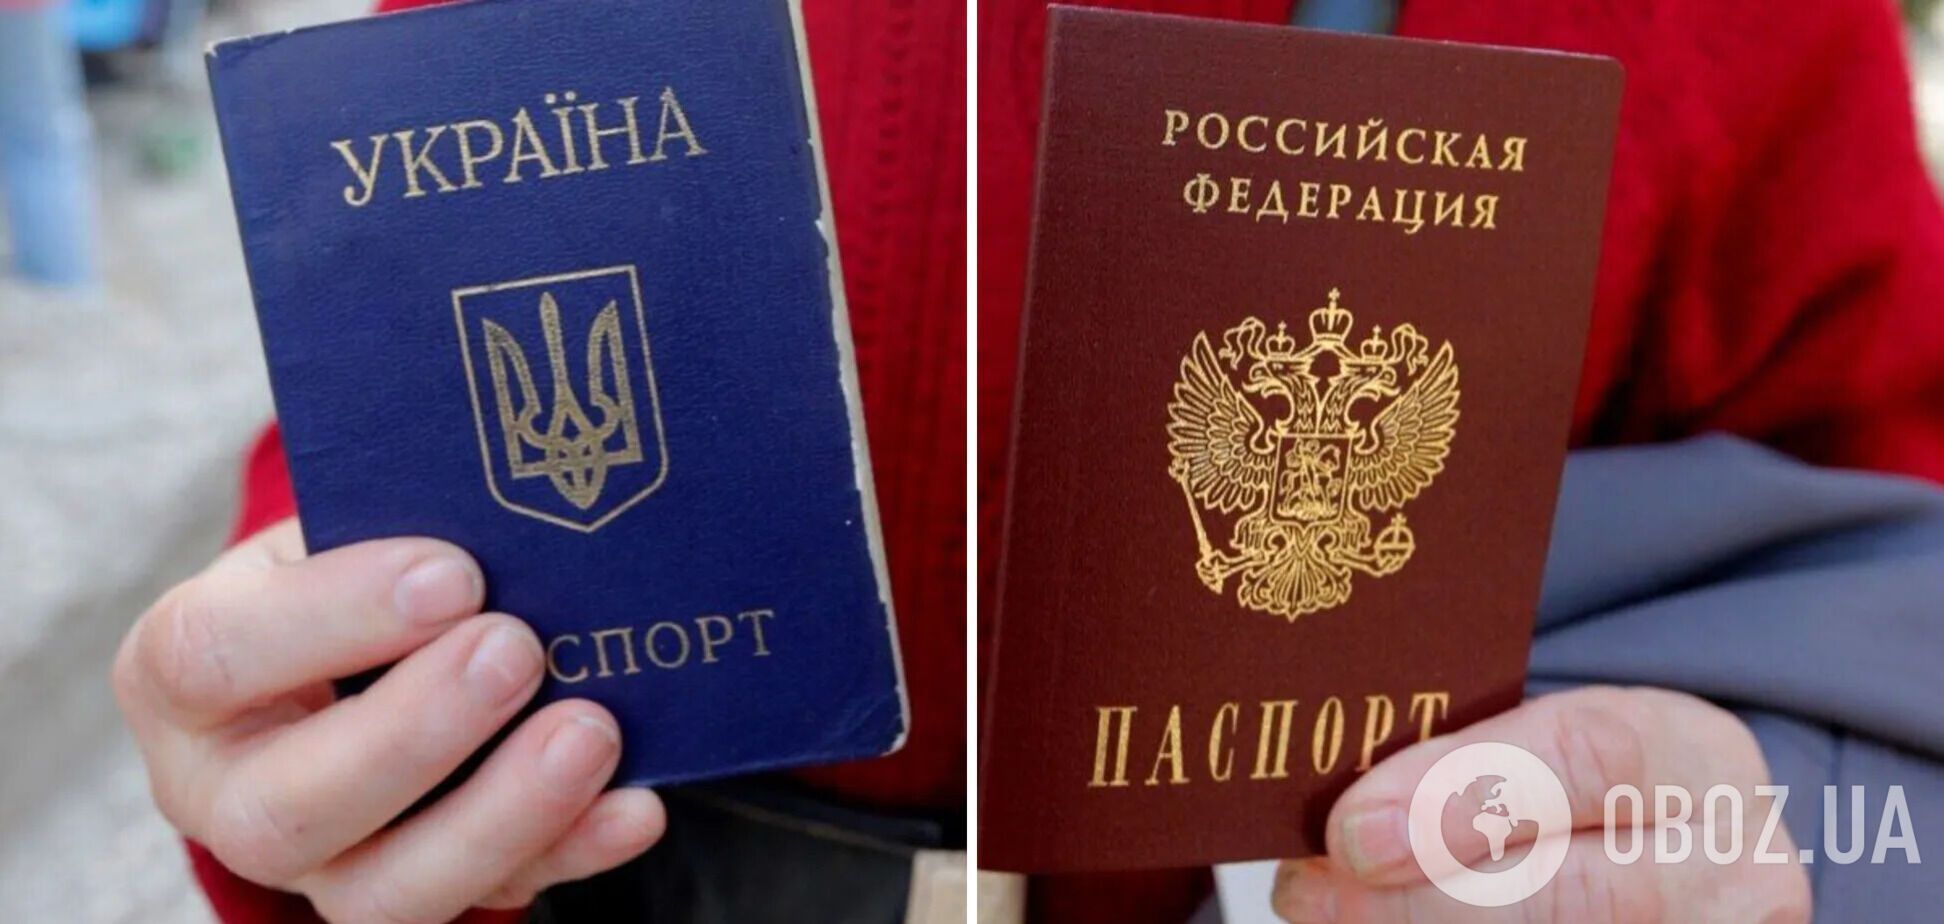 Мы теряем своих детей не для того, чтобы мусор с нашими паспортами наводнил Украину